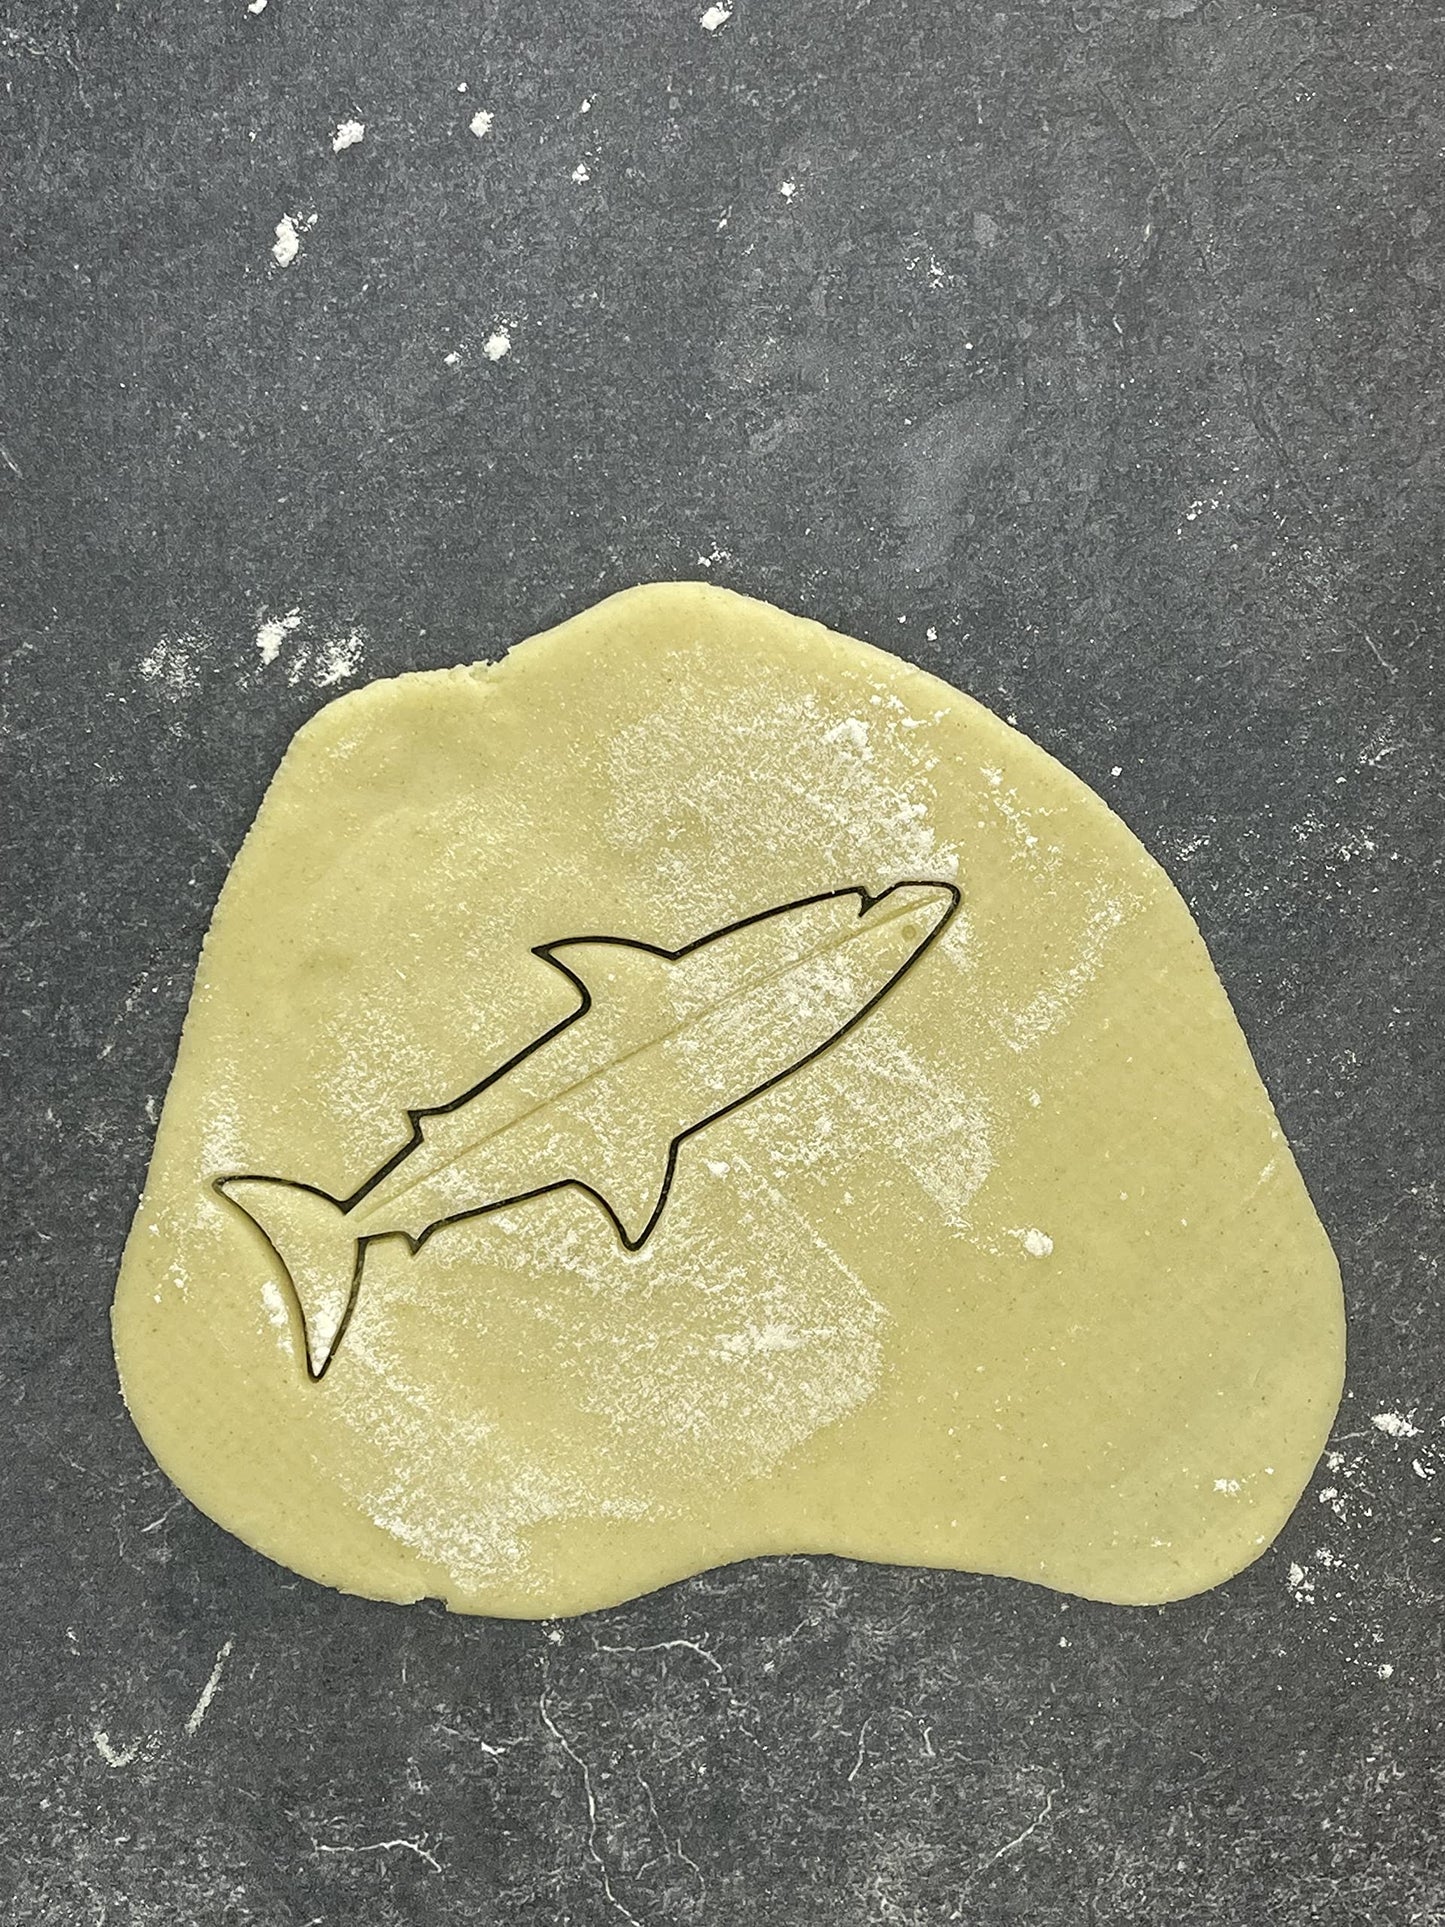 Emporte pièce Requin - Animal - pour la réalisaton de biscuit sablé, patisserie, pate à sucre -Décoration gateau-Fait maison- ELACE